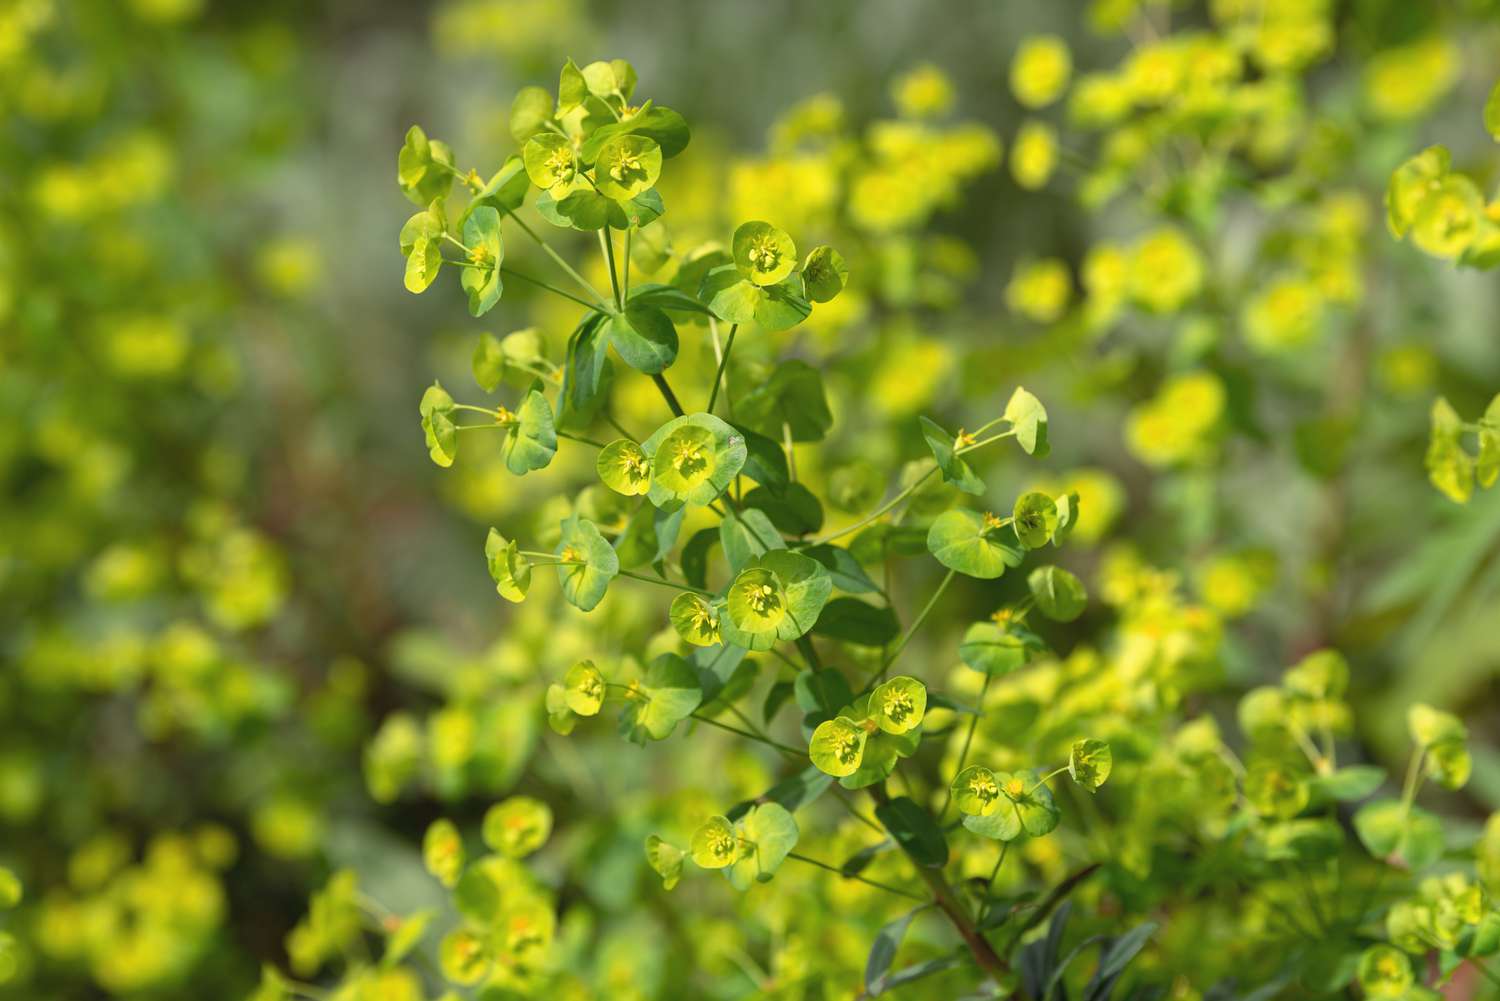 Planta de tártago con flores redondas de color amarillo verdoso agrupadas en el tallo